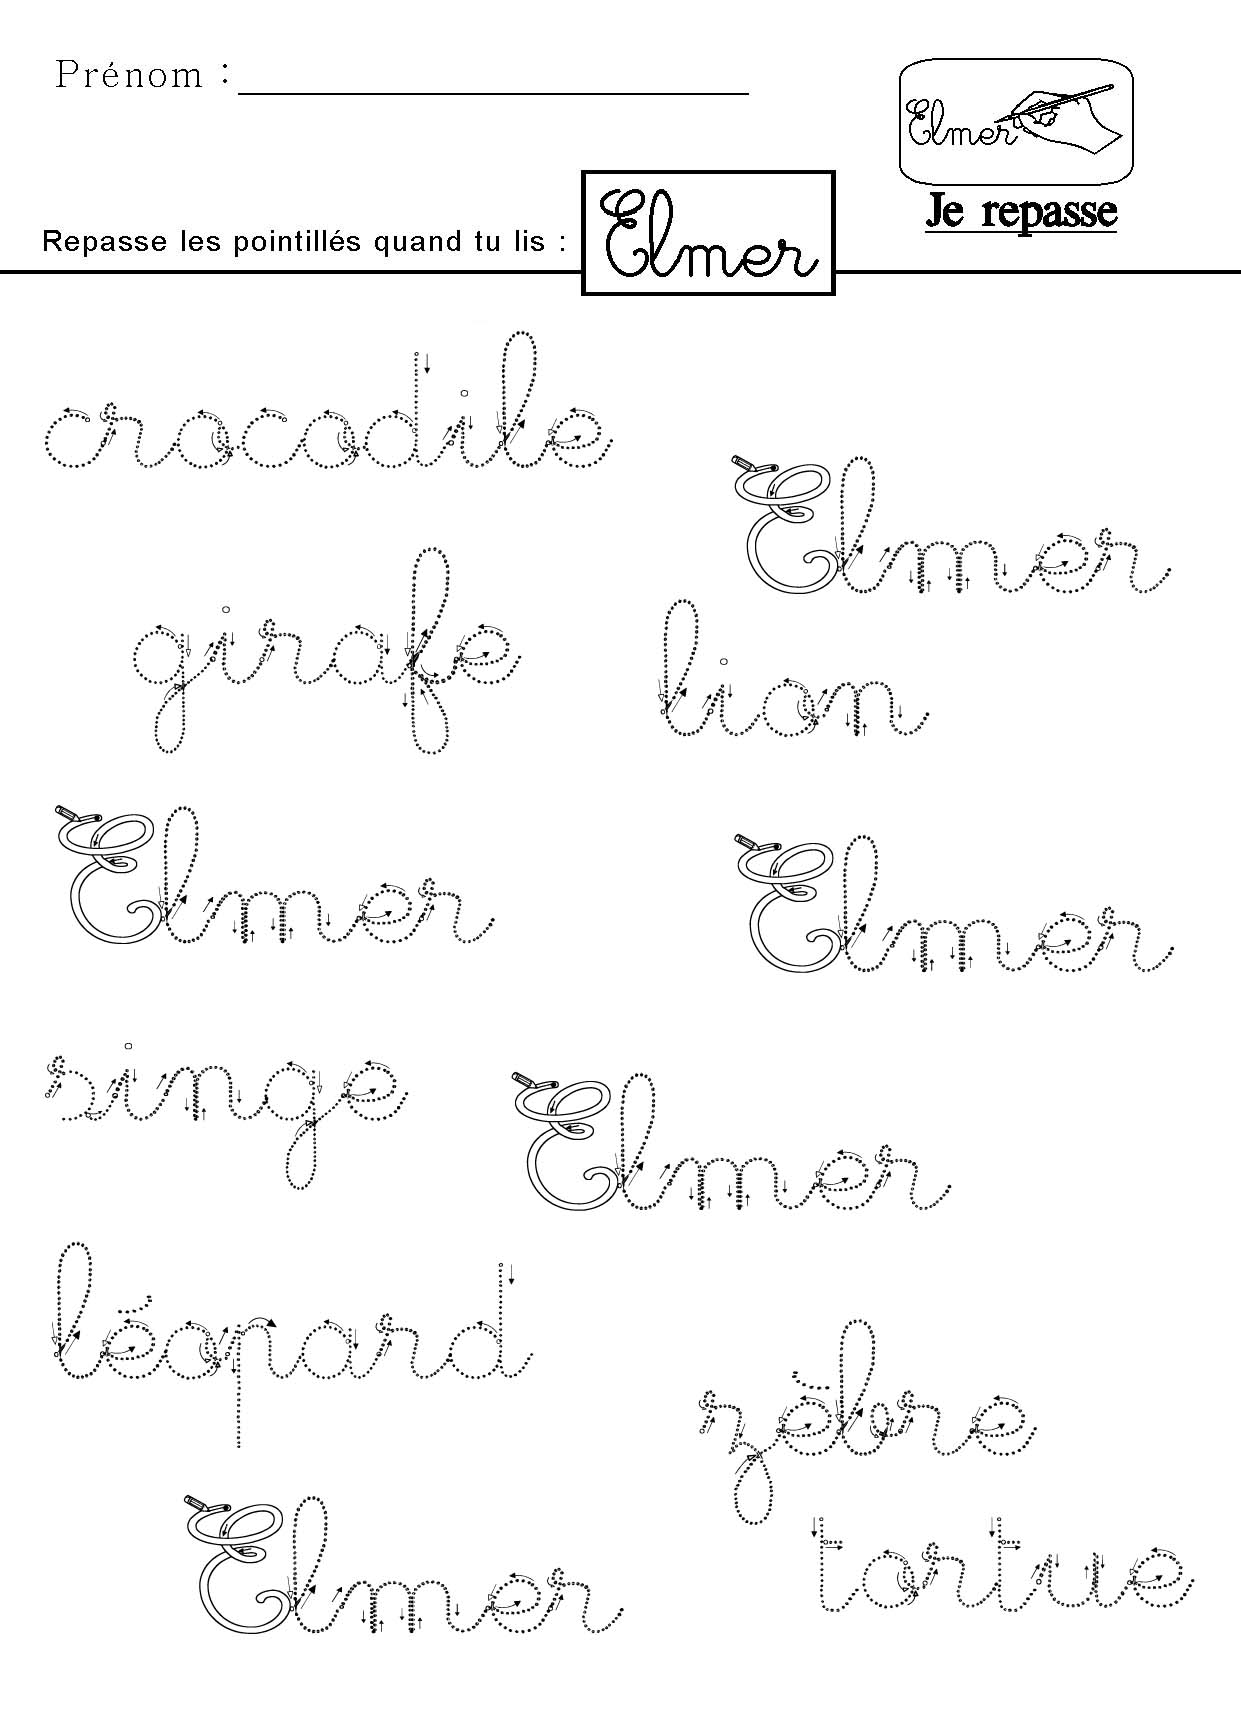 Je lis le mot Elmer en criture cursive et je repasse les pointills